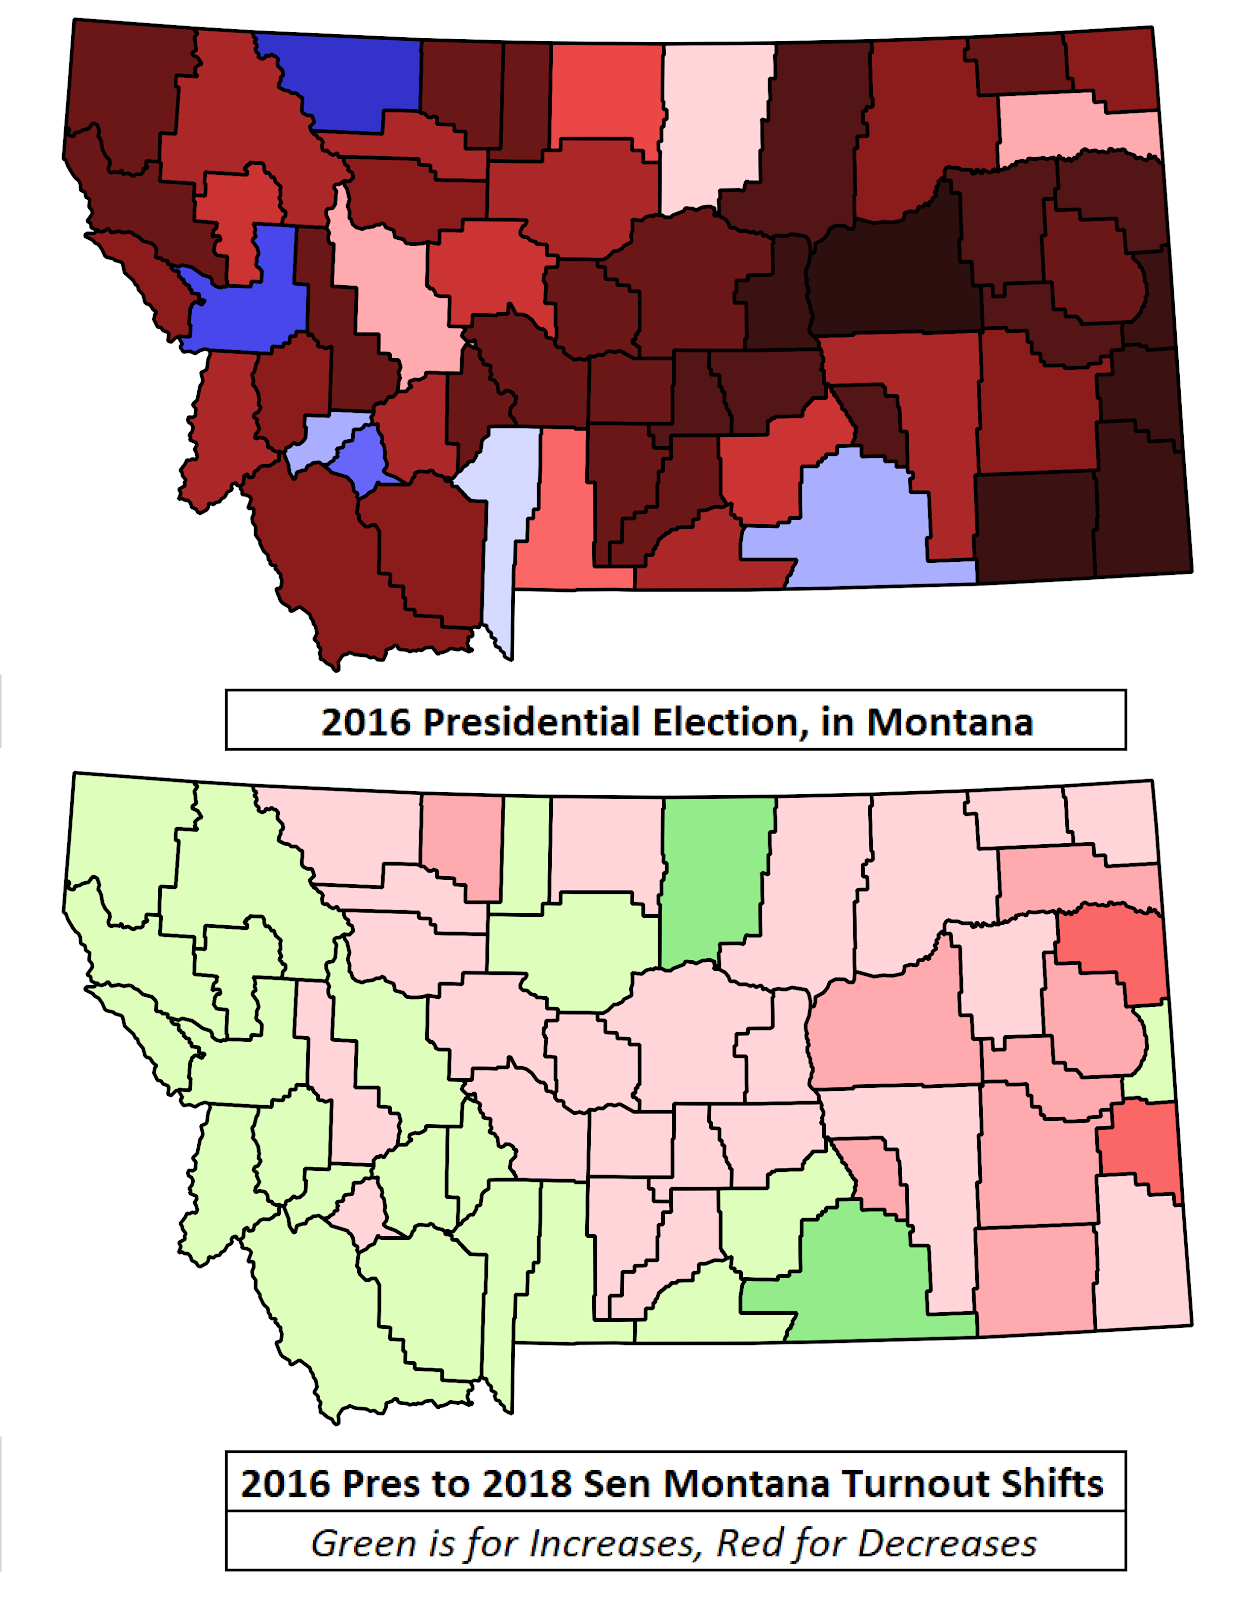 Montana turnout shifts.